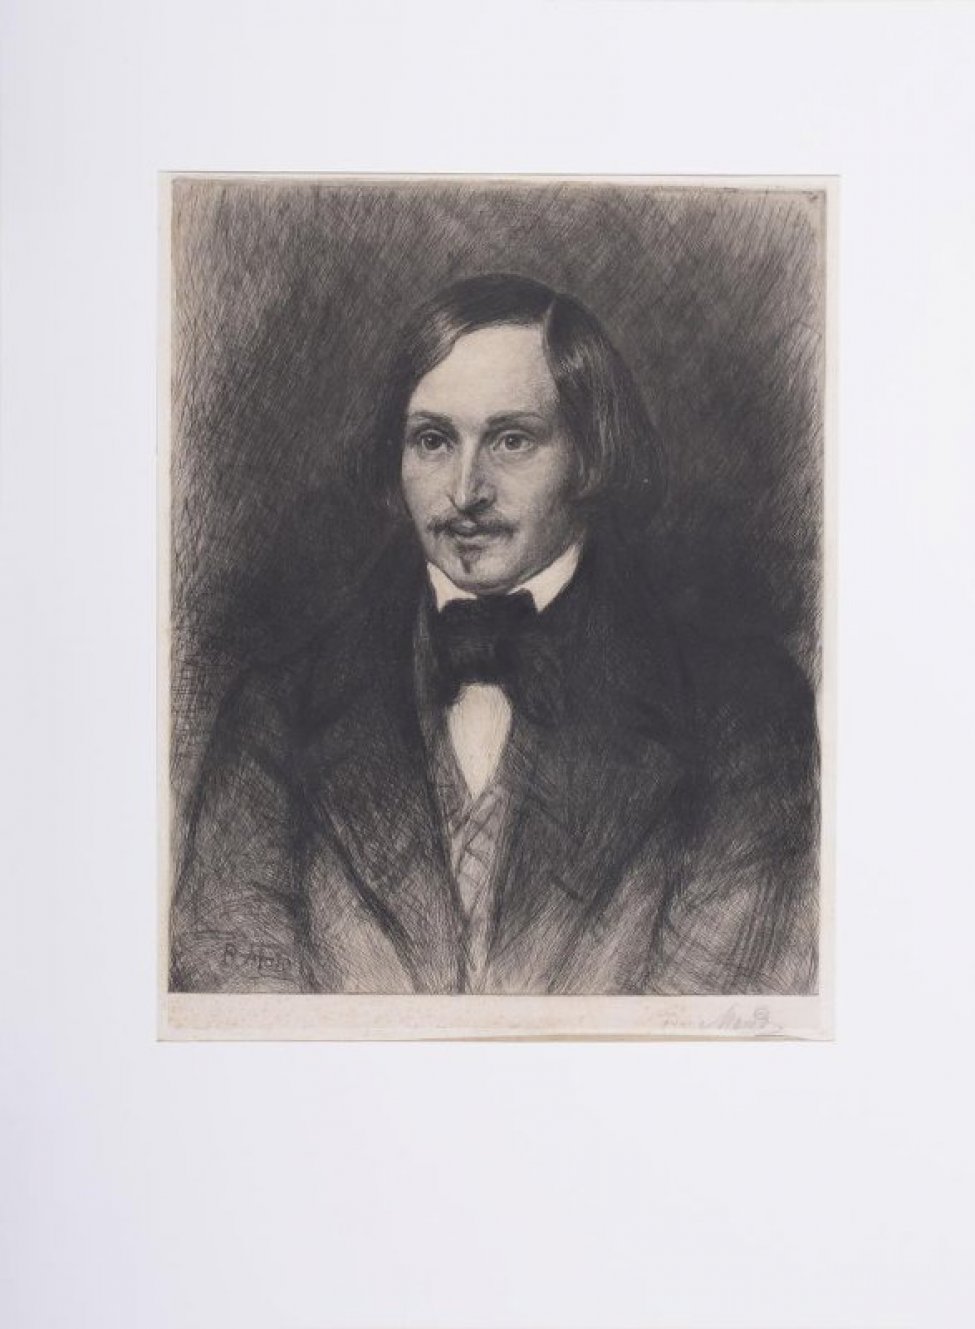 В четырехугольнике поясной портрет Гоголя. Поворот головы несколько вправо. На нем сюртук, открытый жилет, белая сорочка и черный галстук. Фон темный.